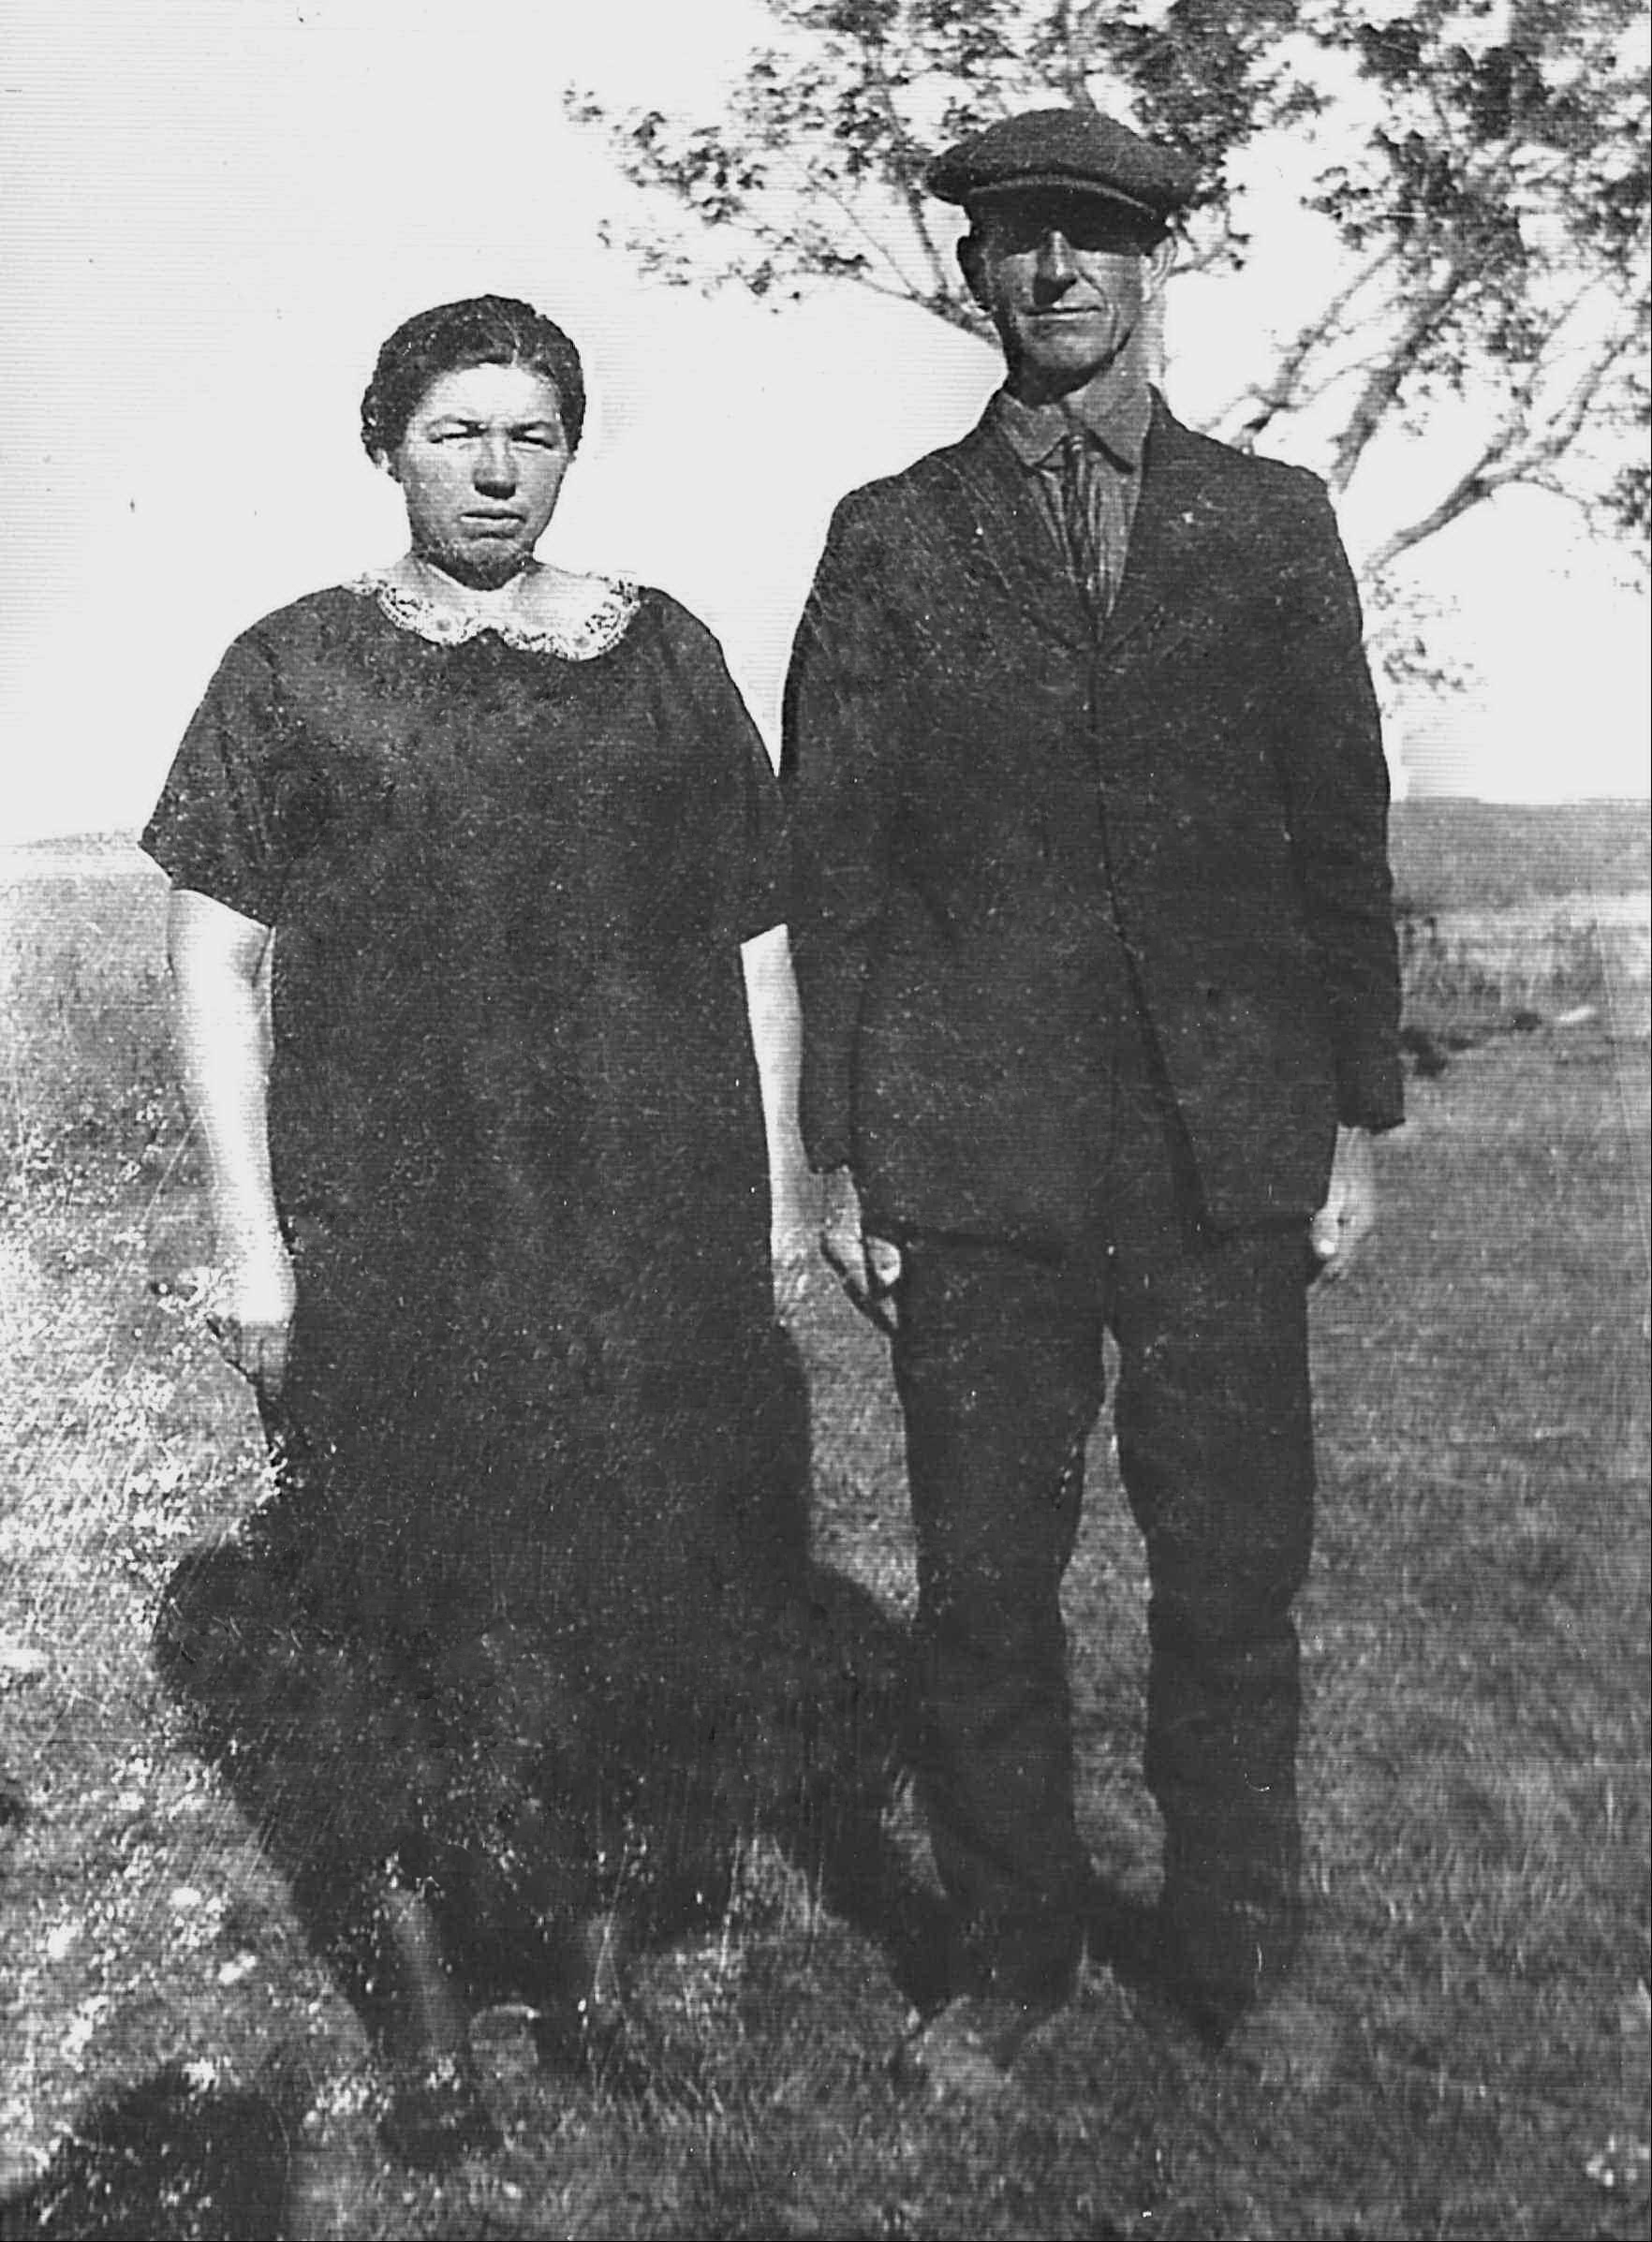 Bertha Scheer and August Dahlke